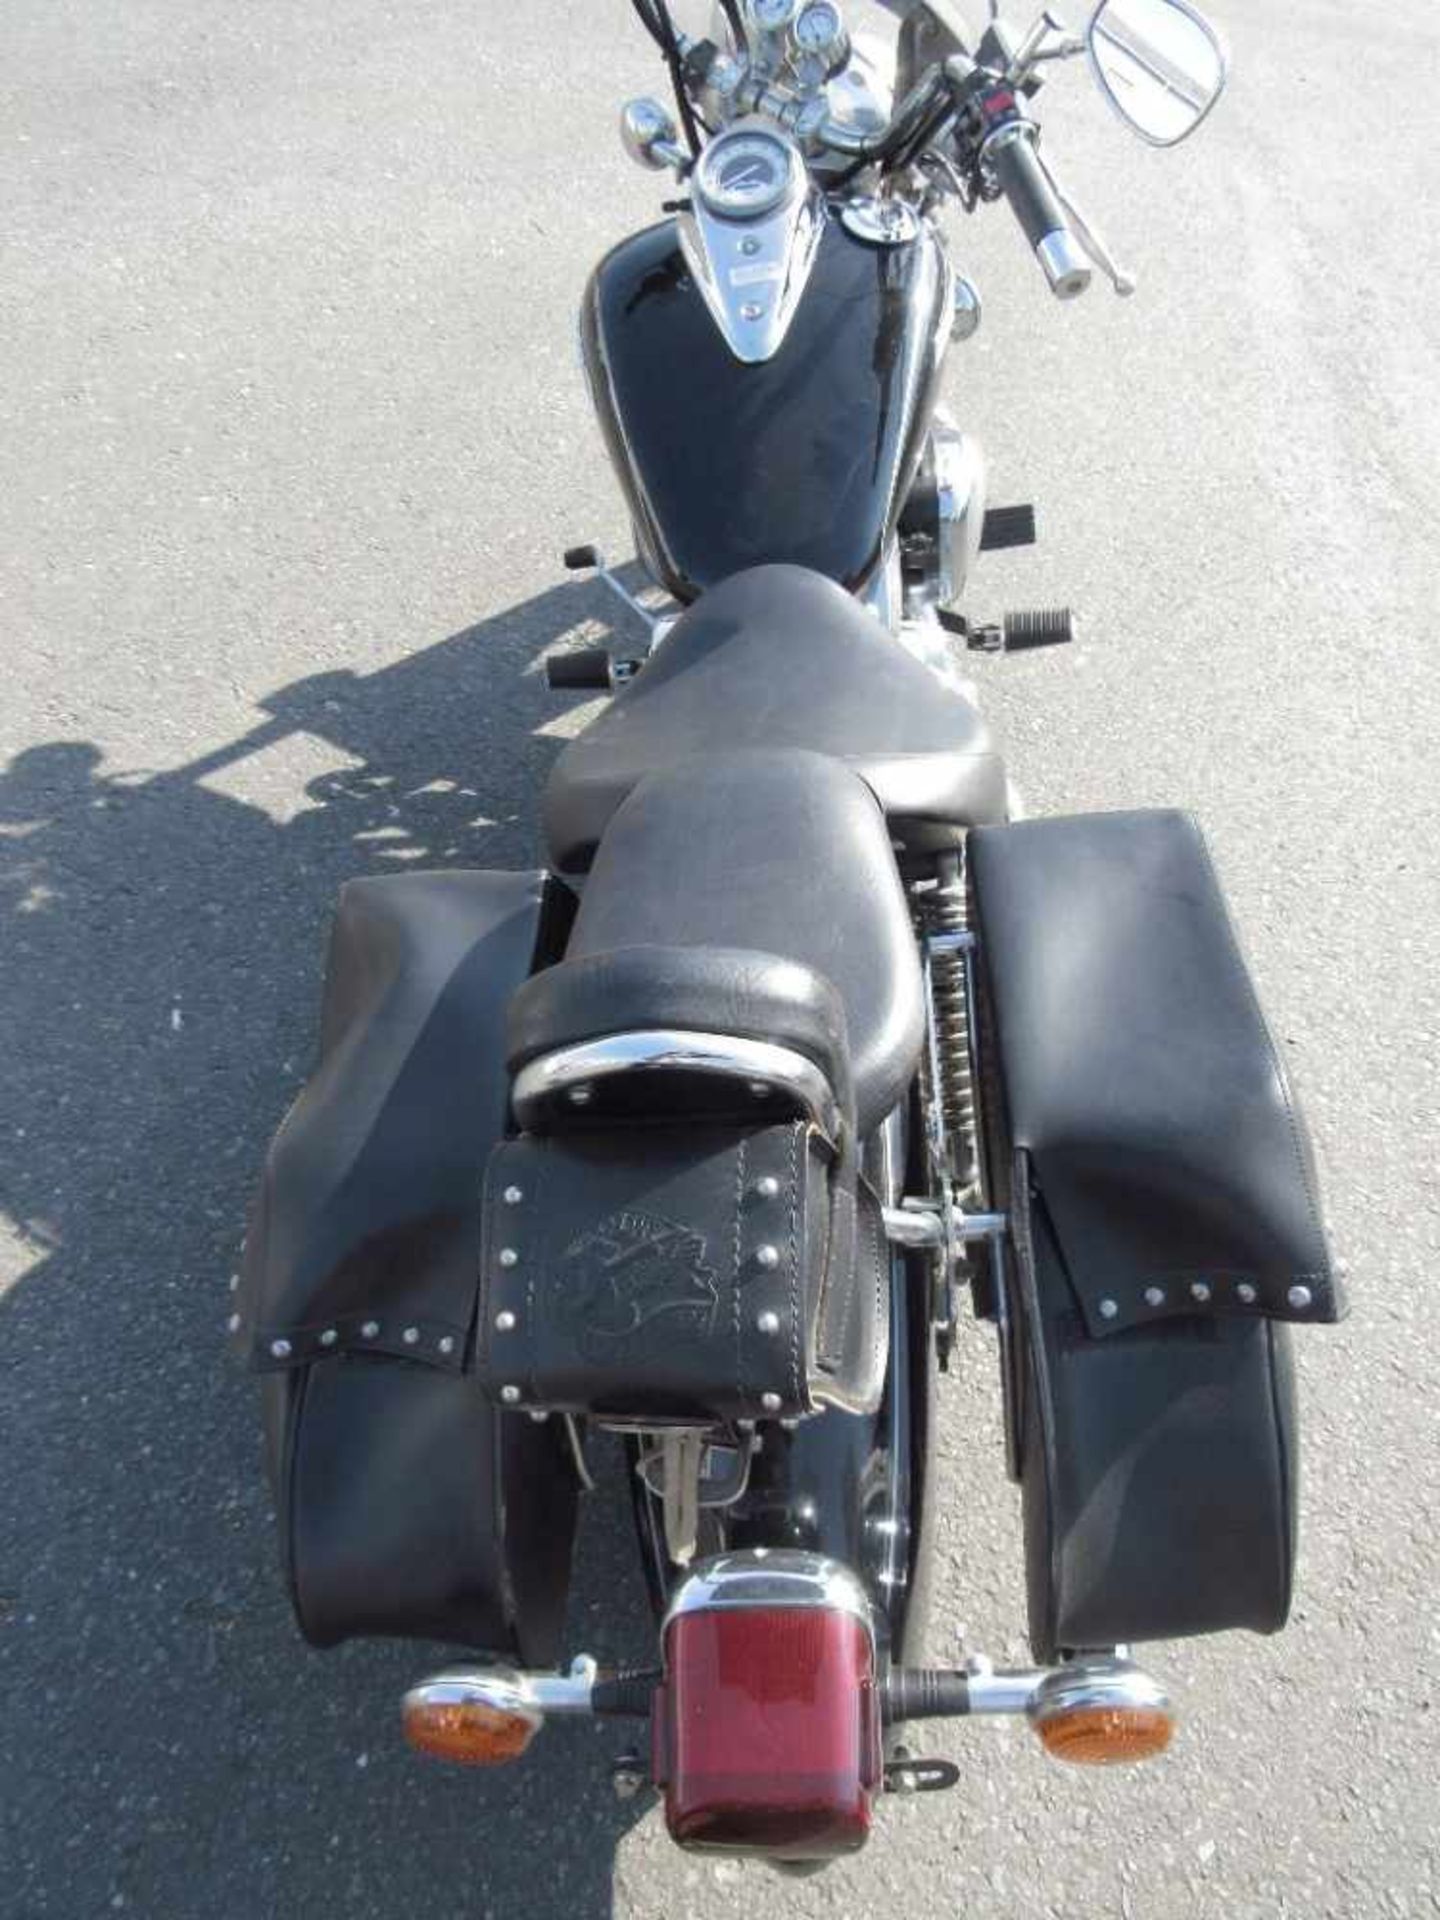 Yamaha Motorrad XVS125H guter Zustand läuft Batterie muss erneuert werden stand 2 jahre - Bild 22 aus 25